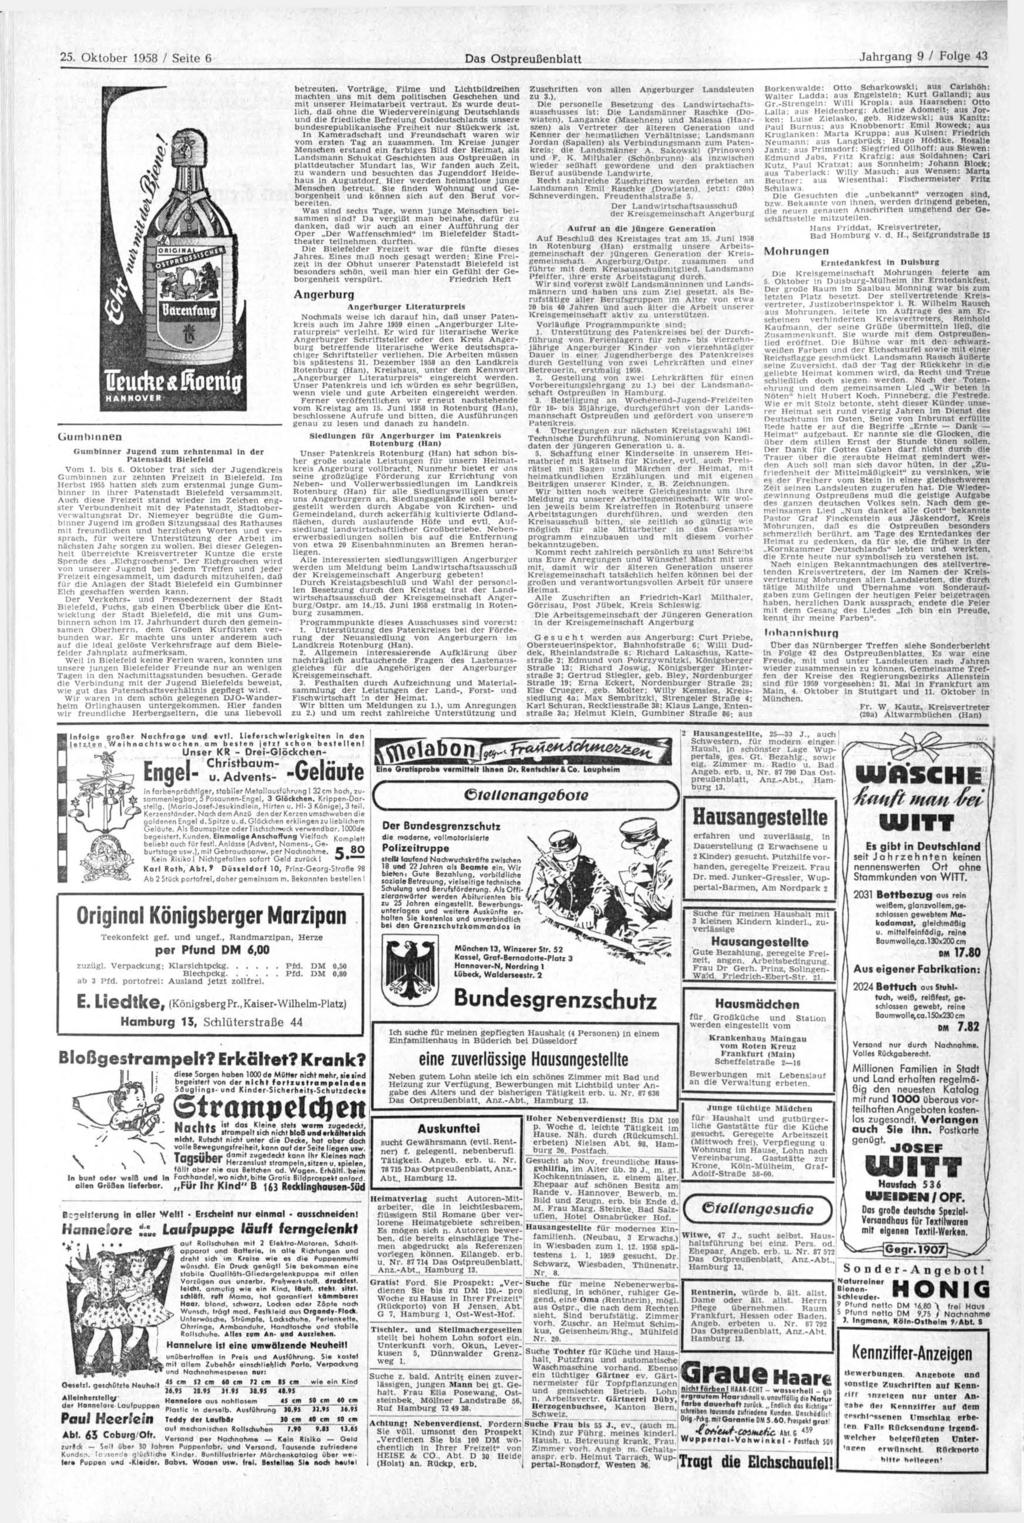 25. Oktober 1958 / Seite 6 Das Ostpreußenblatt üurn hinnen HANNOVER Gumbinner Jugend zum zehntenmal In der Patenstadt Bielefeld Vom l. bis 6.